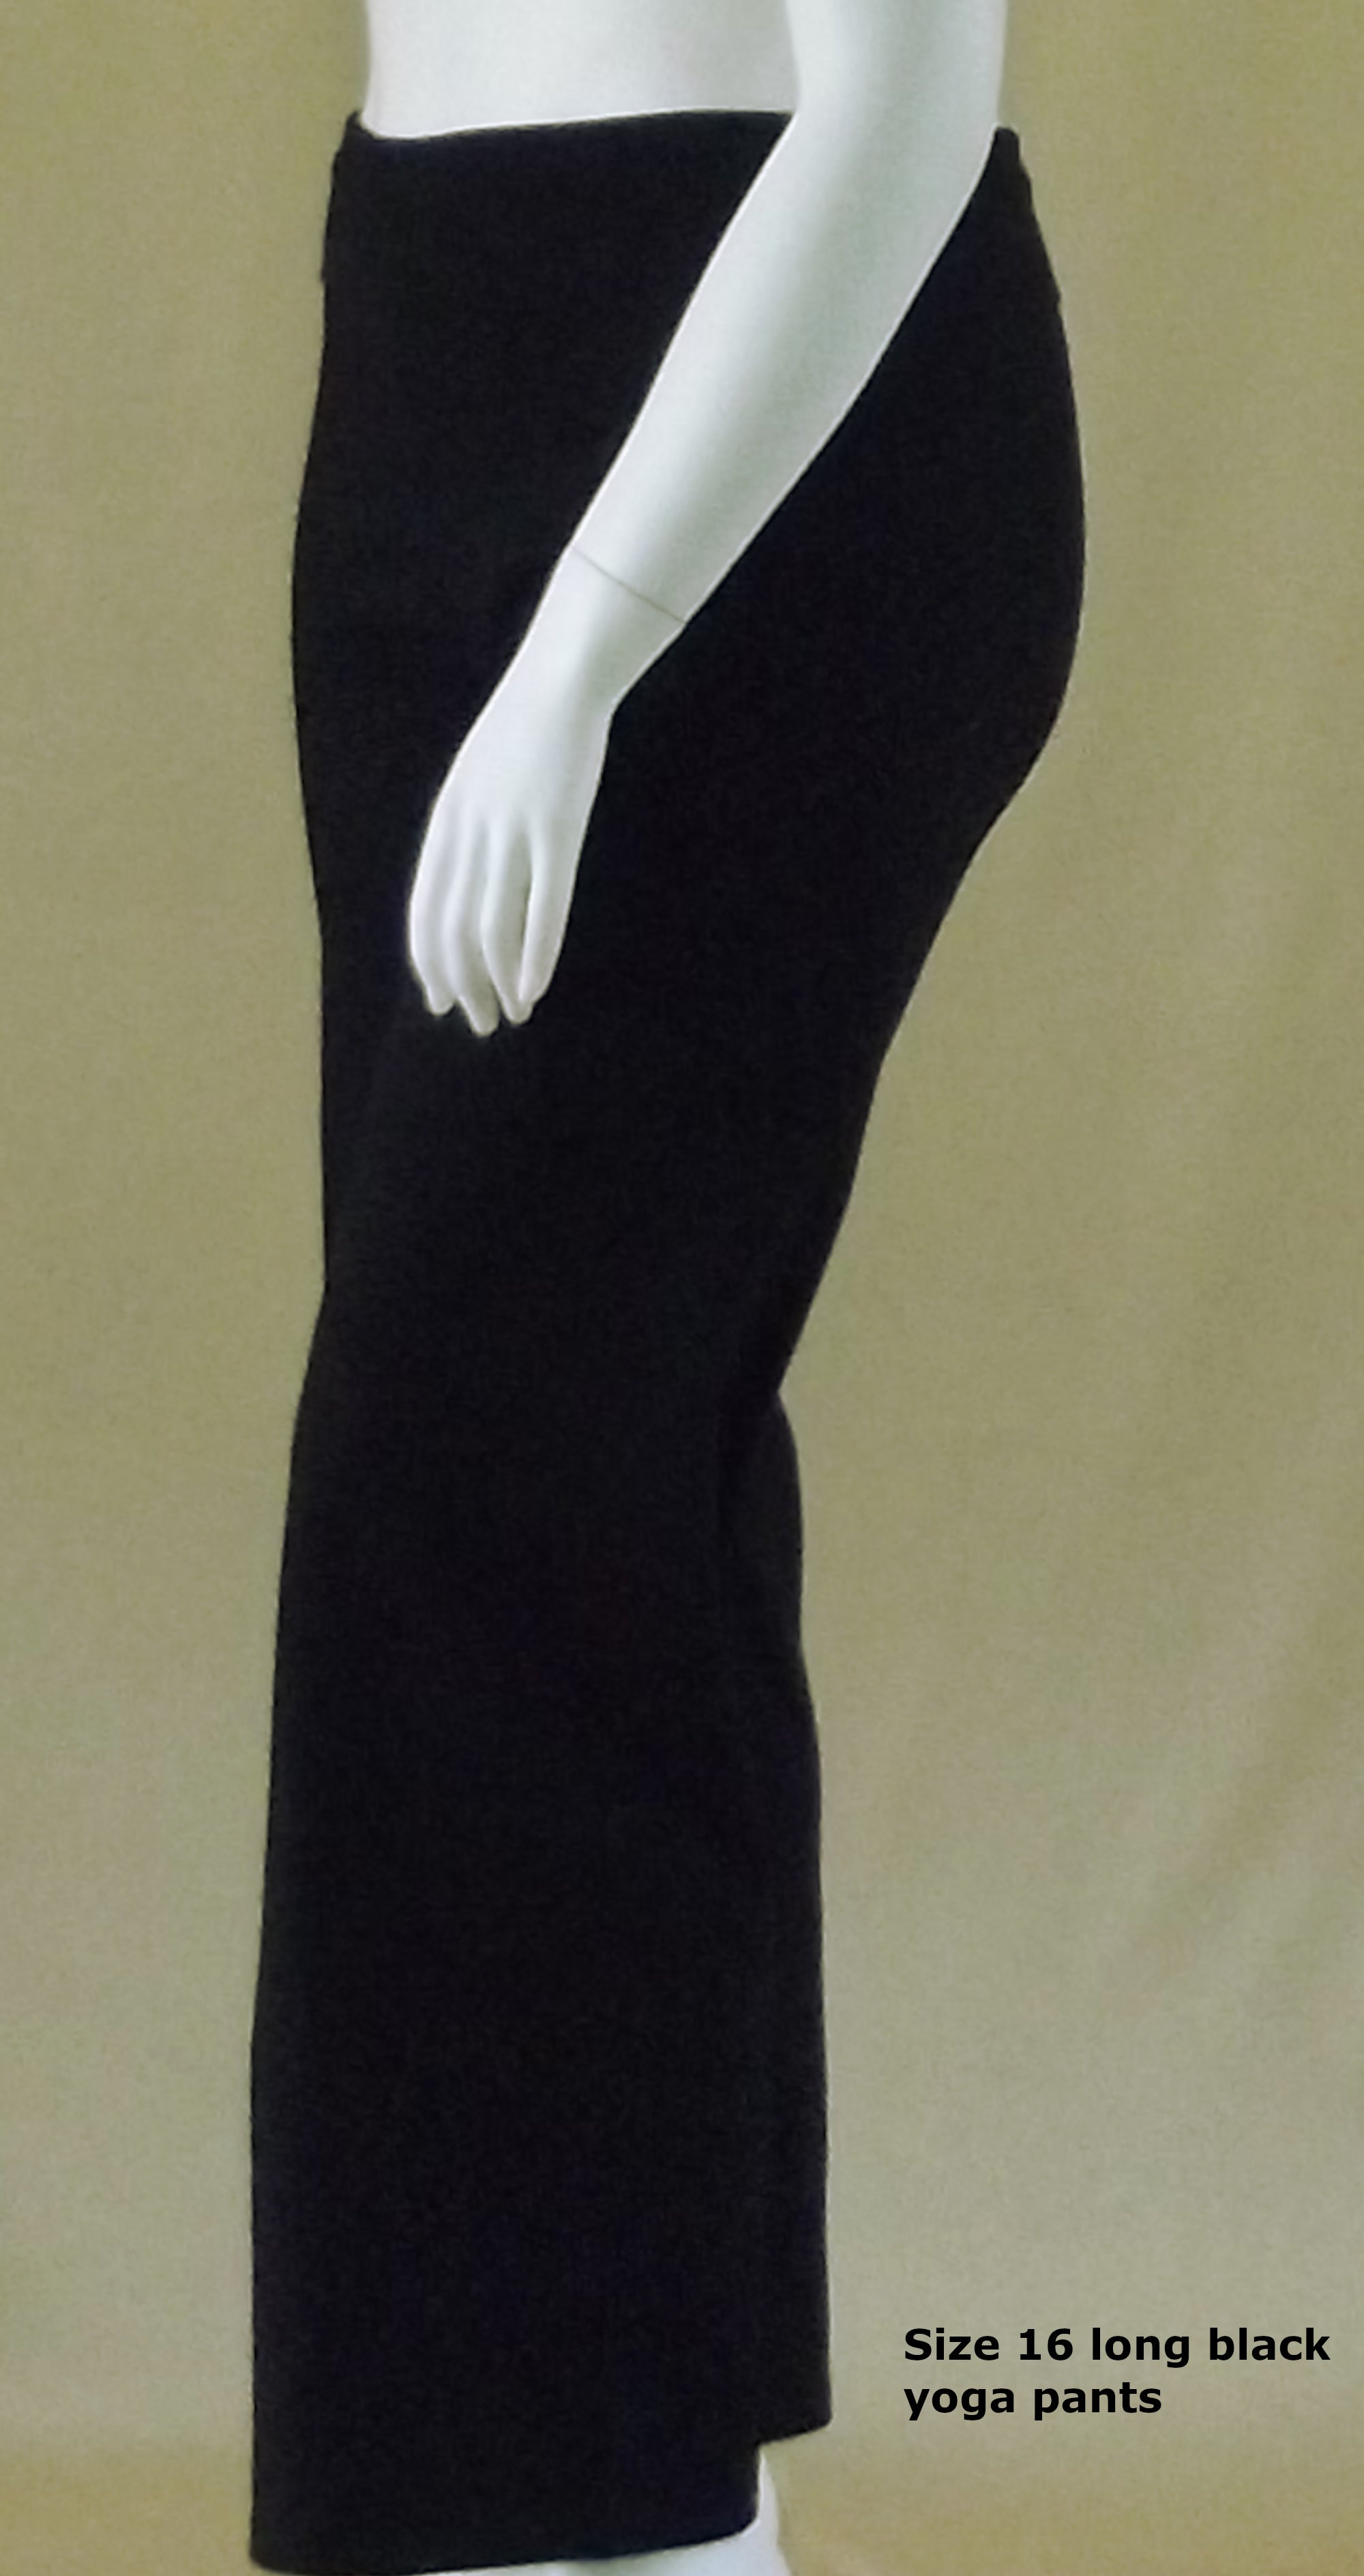 a plus size mannequin wearing black long yoga pants